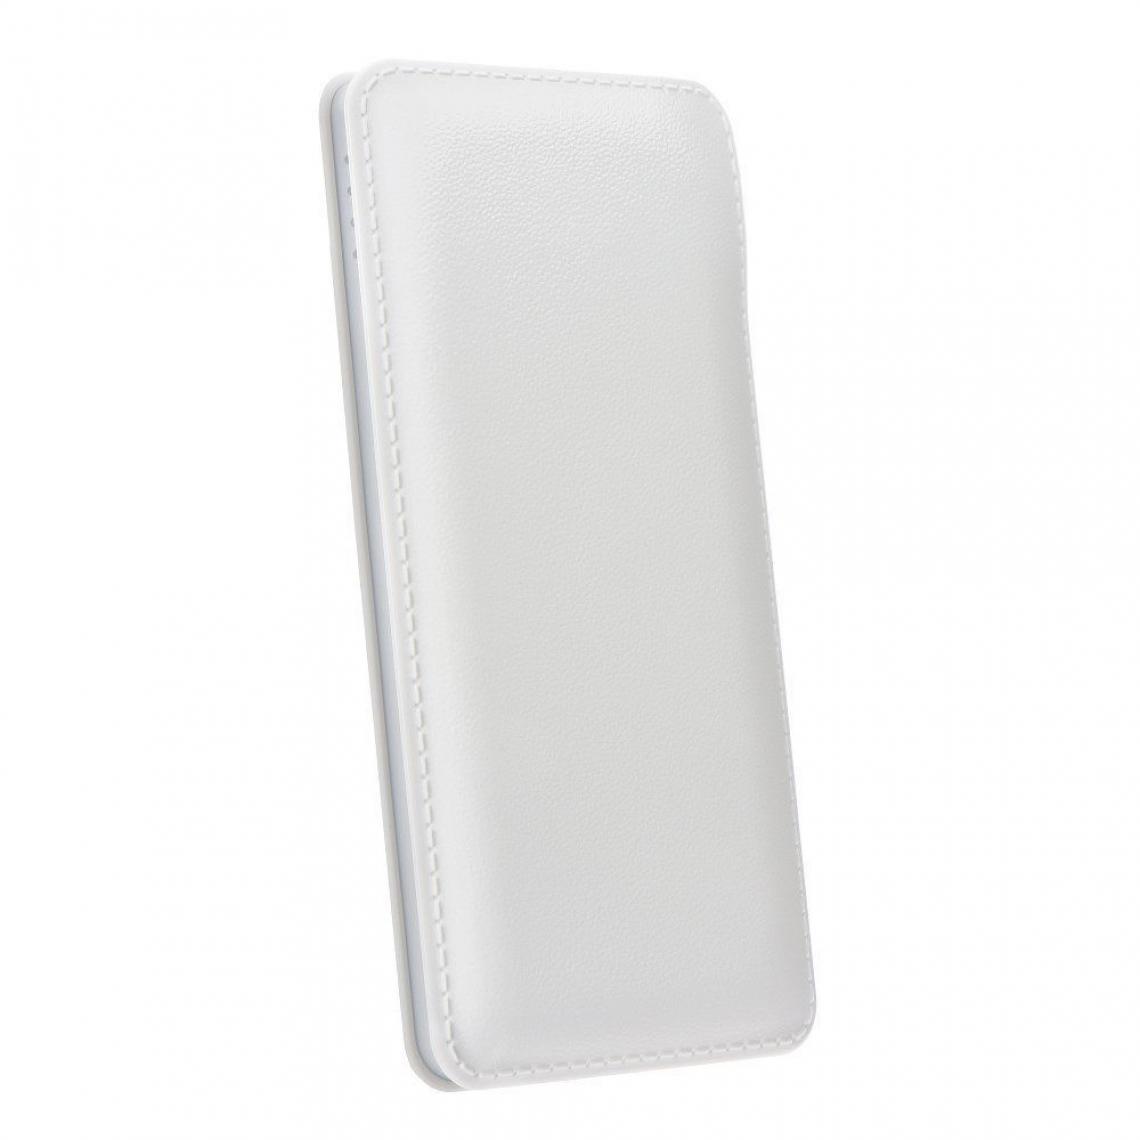 Ozzzo - Chargeur batterie externe 20000 mAh powerbank ozzzo blanc pour Teclast X5 Pro - Autres accessoires smartphone